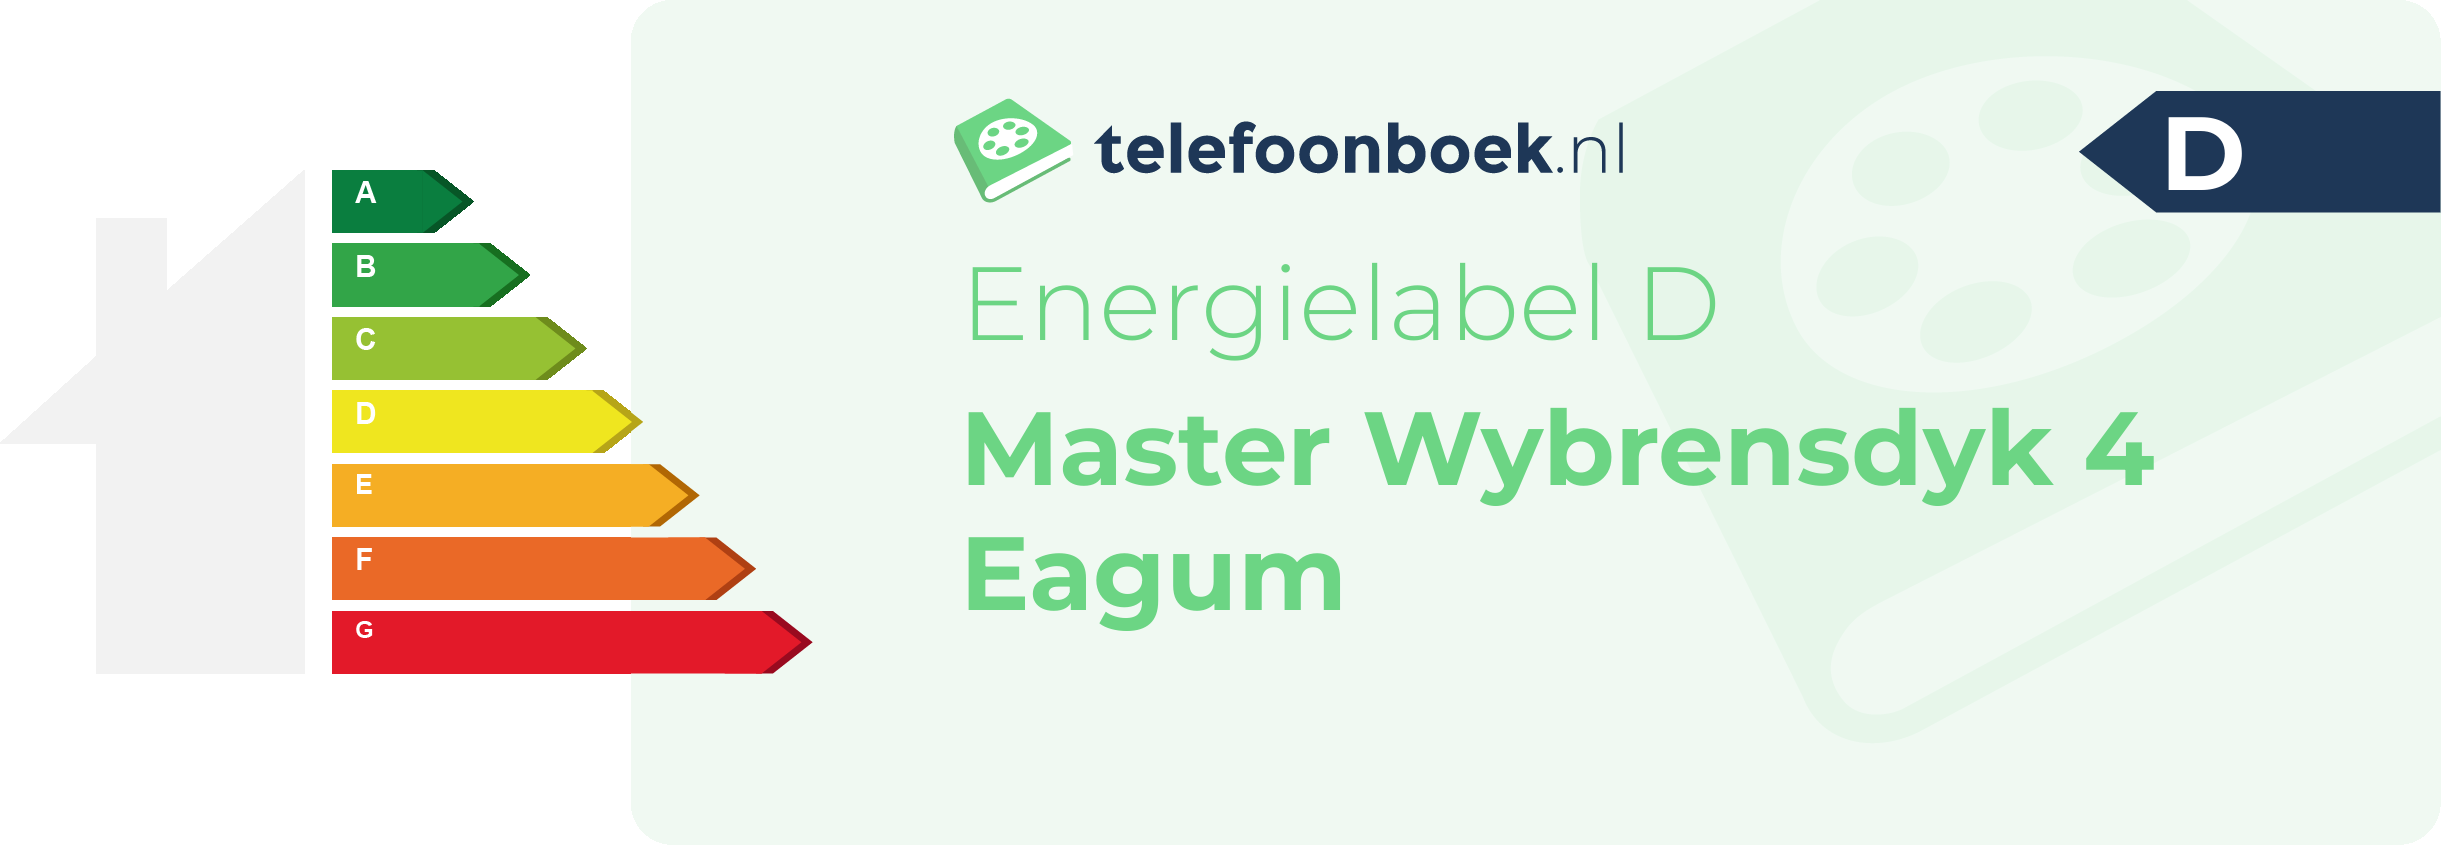 Energielabel Master Wybrensdyk 4 Eagum